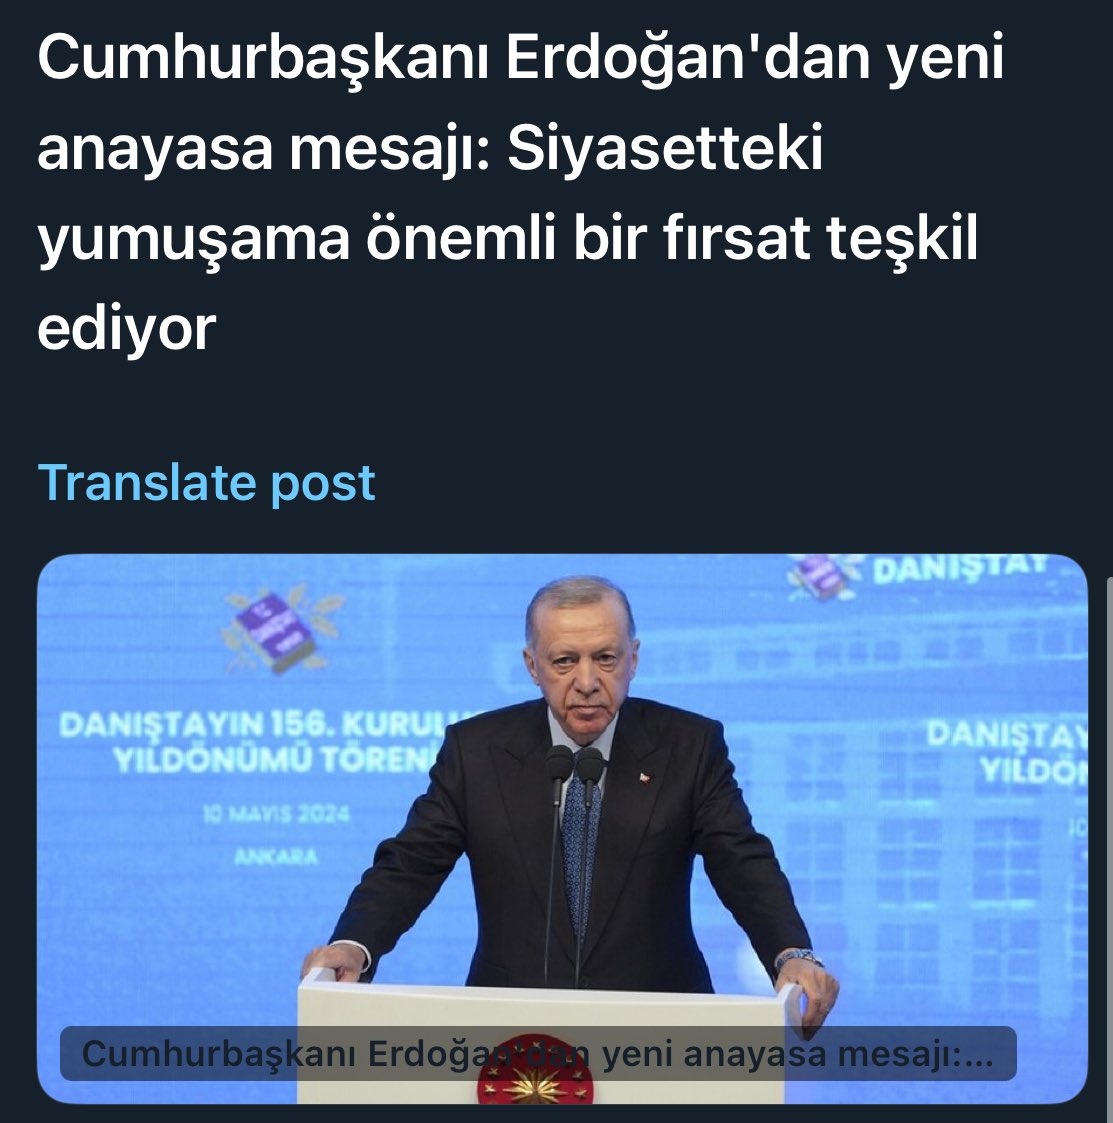 Erdoğan, bugün siyasetteki yumuşamanın yeni anayasa konusuda önemli bir fırsat teşkil ettiğini söylemiş. 5 Mayıs’ta amacının bu olduğunu yazmıştım.